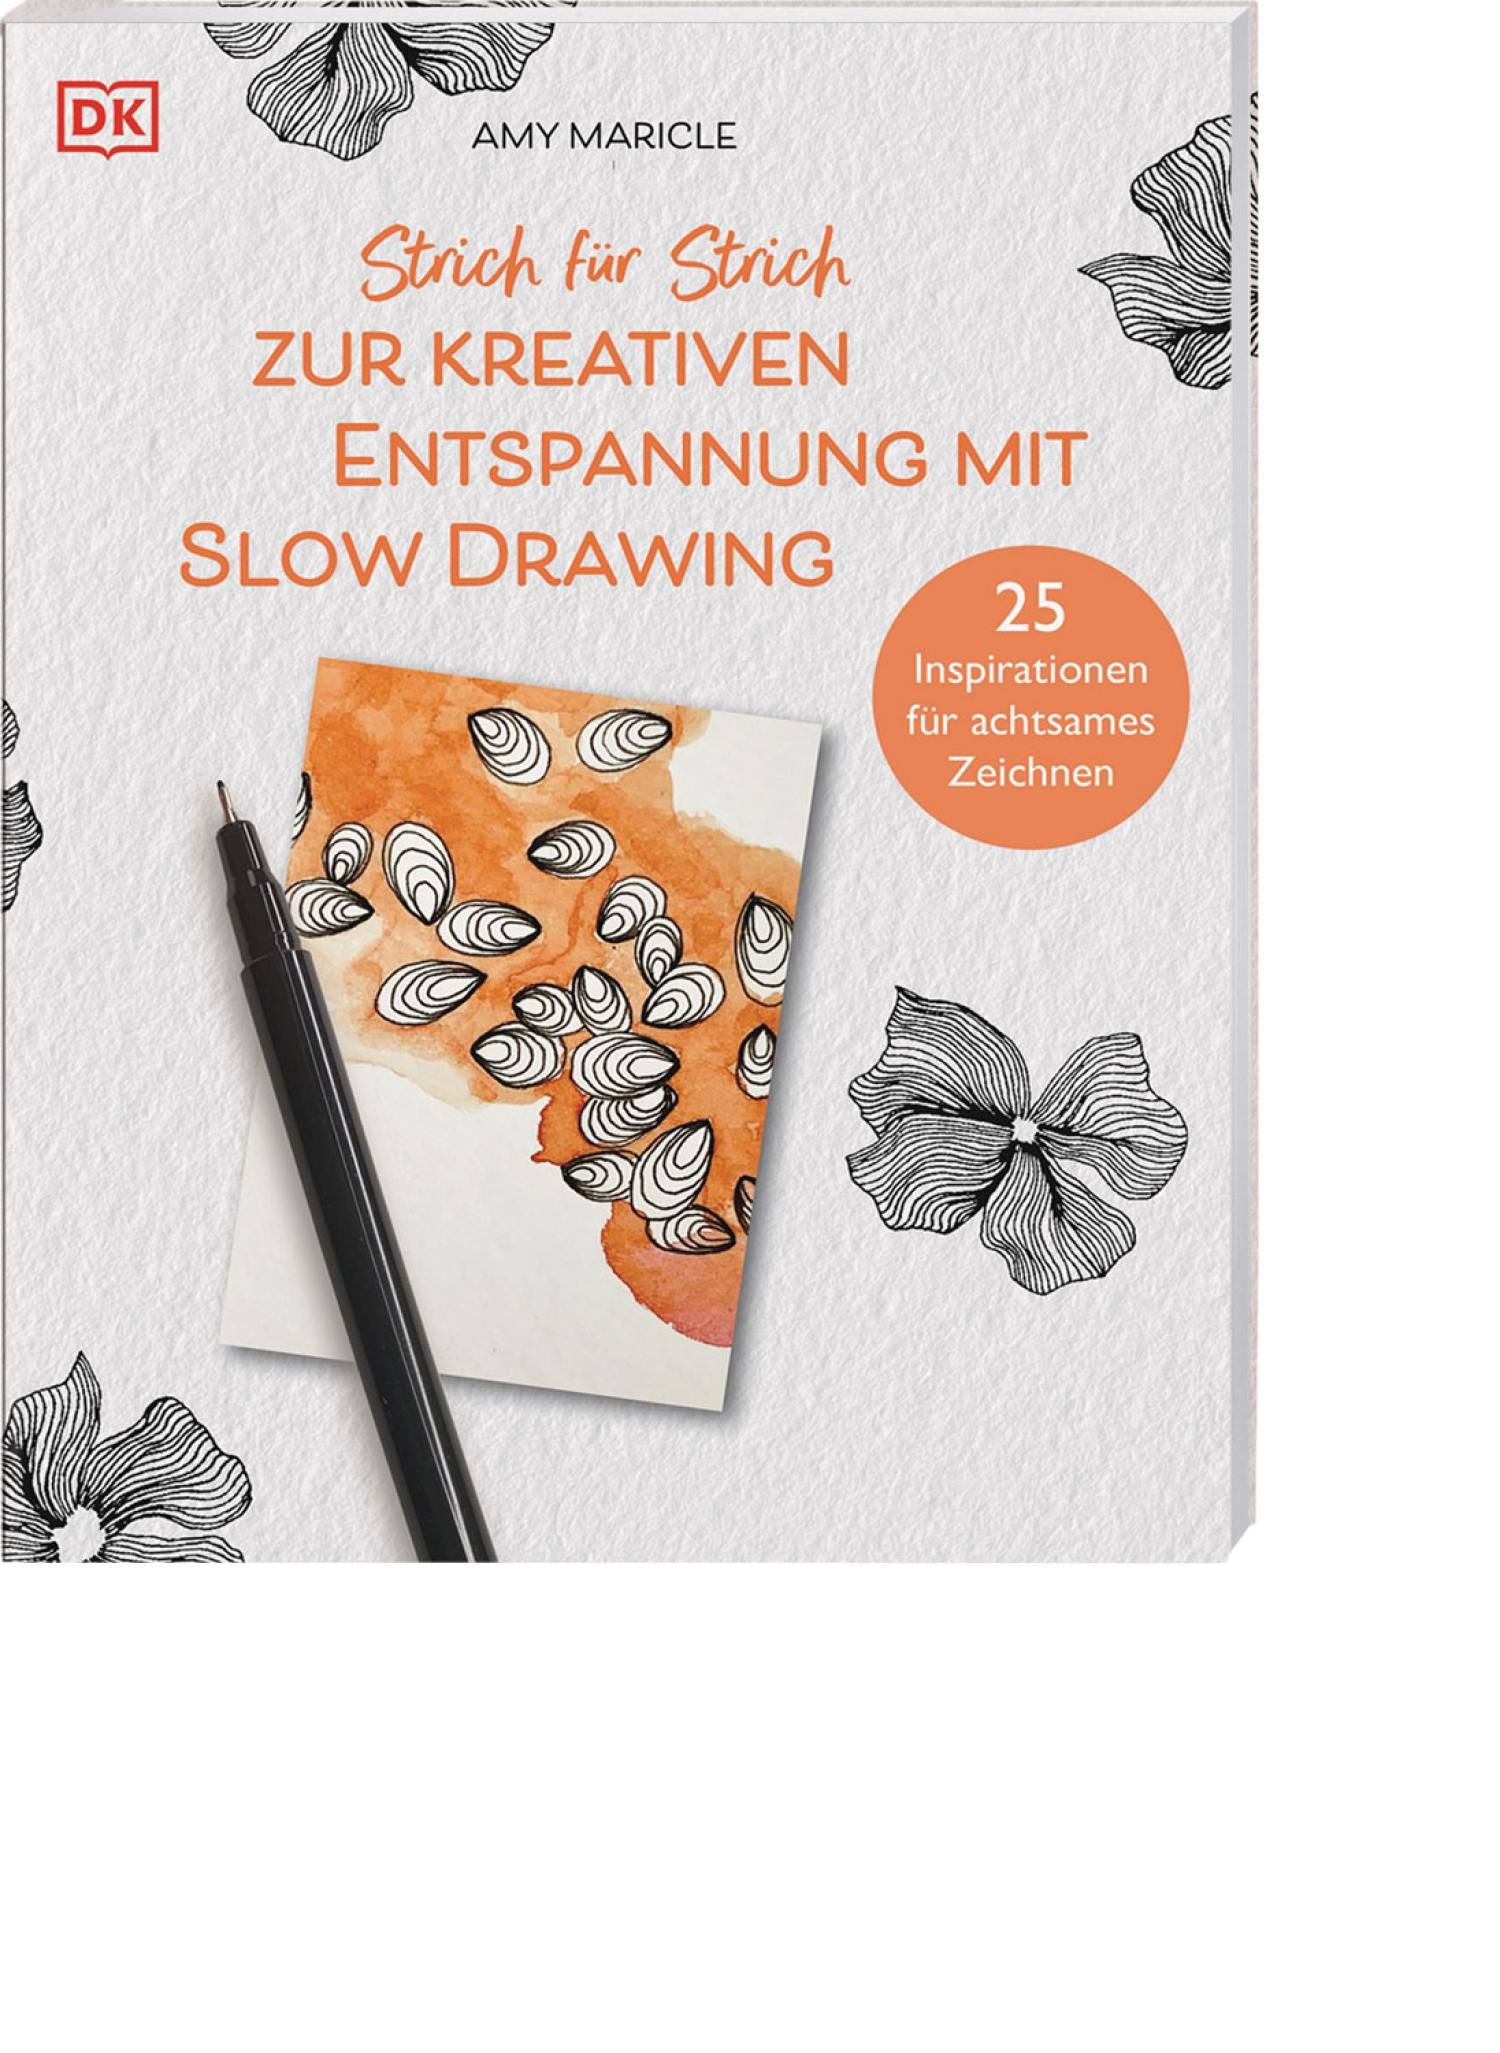 Strich für Strich zur kreativen Entspannung mit Slow Drawing, Produktbild 1